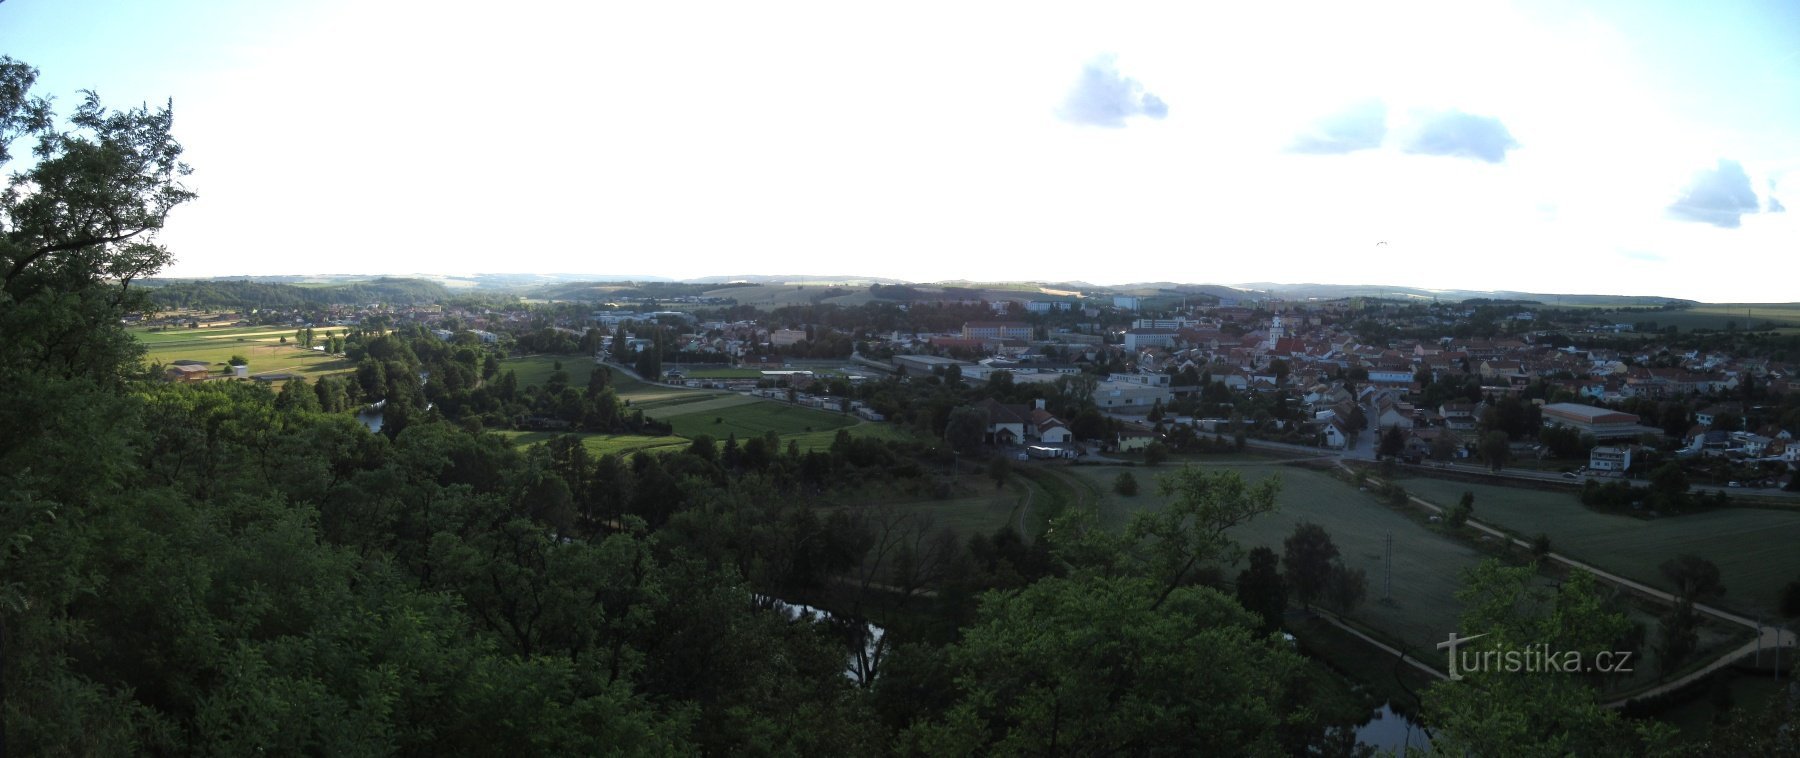 Ivančice - aan de Rijn - fort, park en uitkijktoren van Alfons Mucha (Réna)